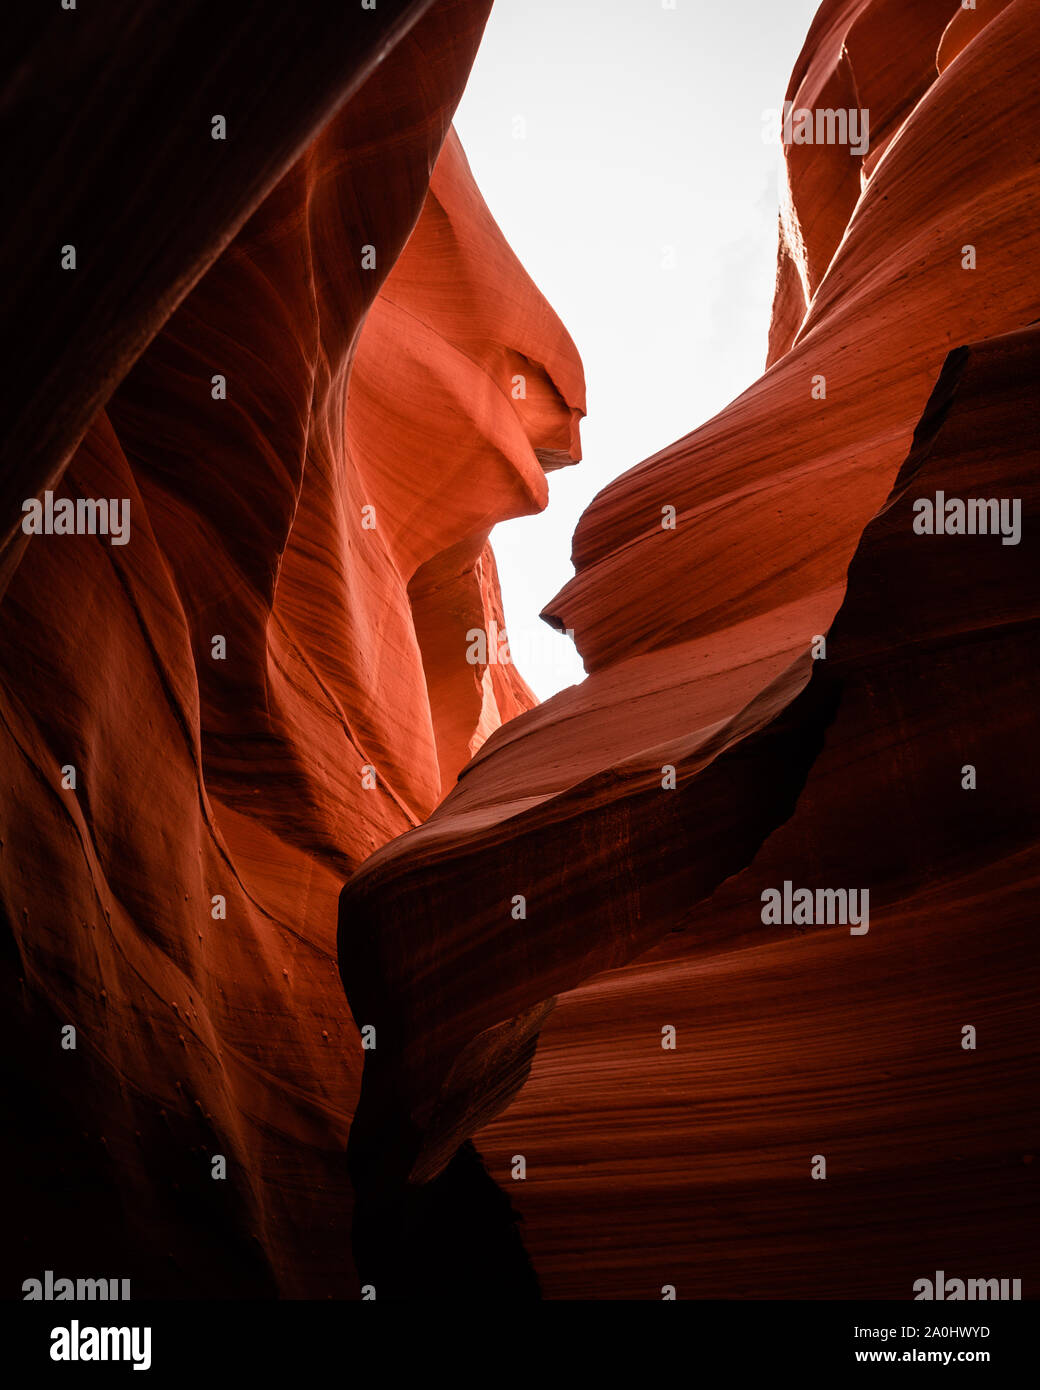 Lower Antelope Canyon Arizona USA Stock Photo